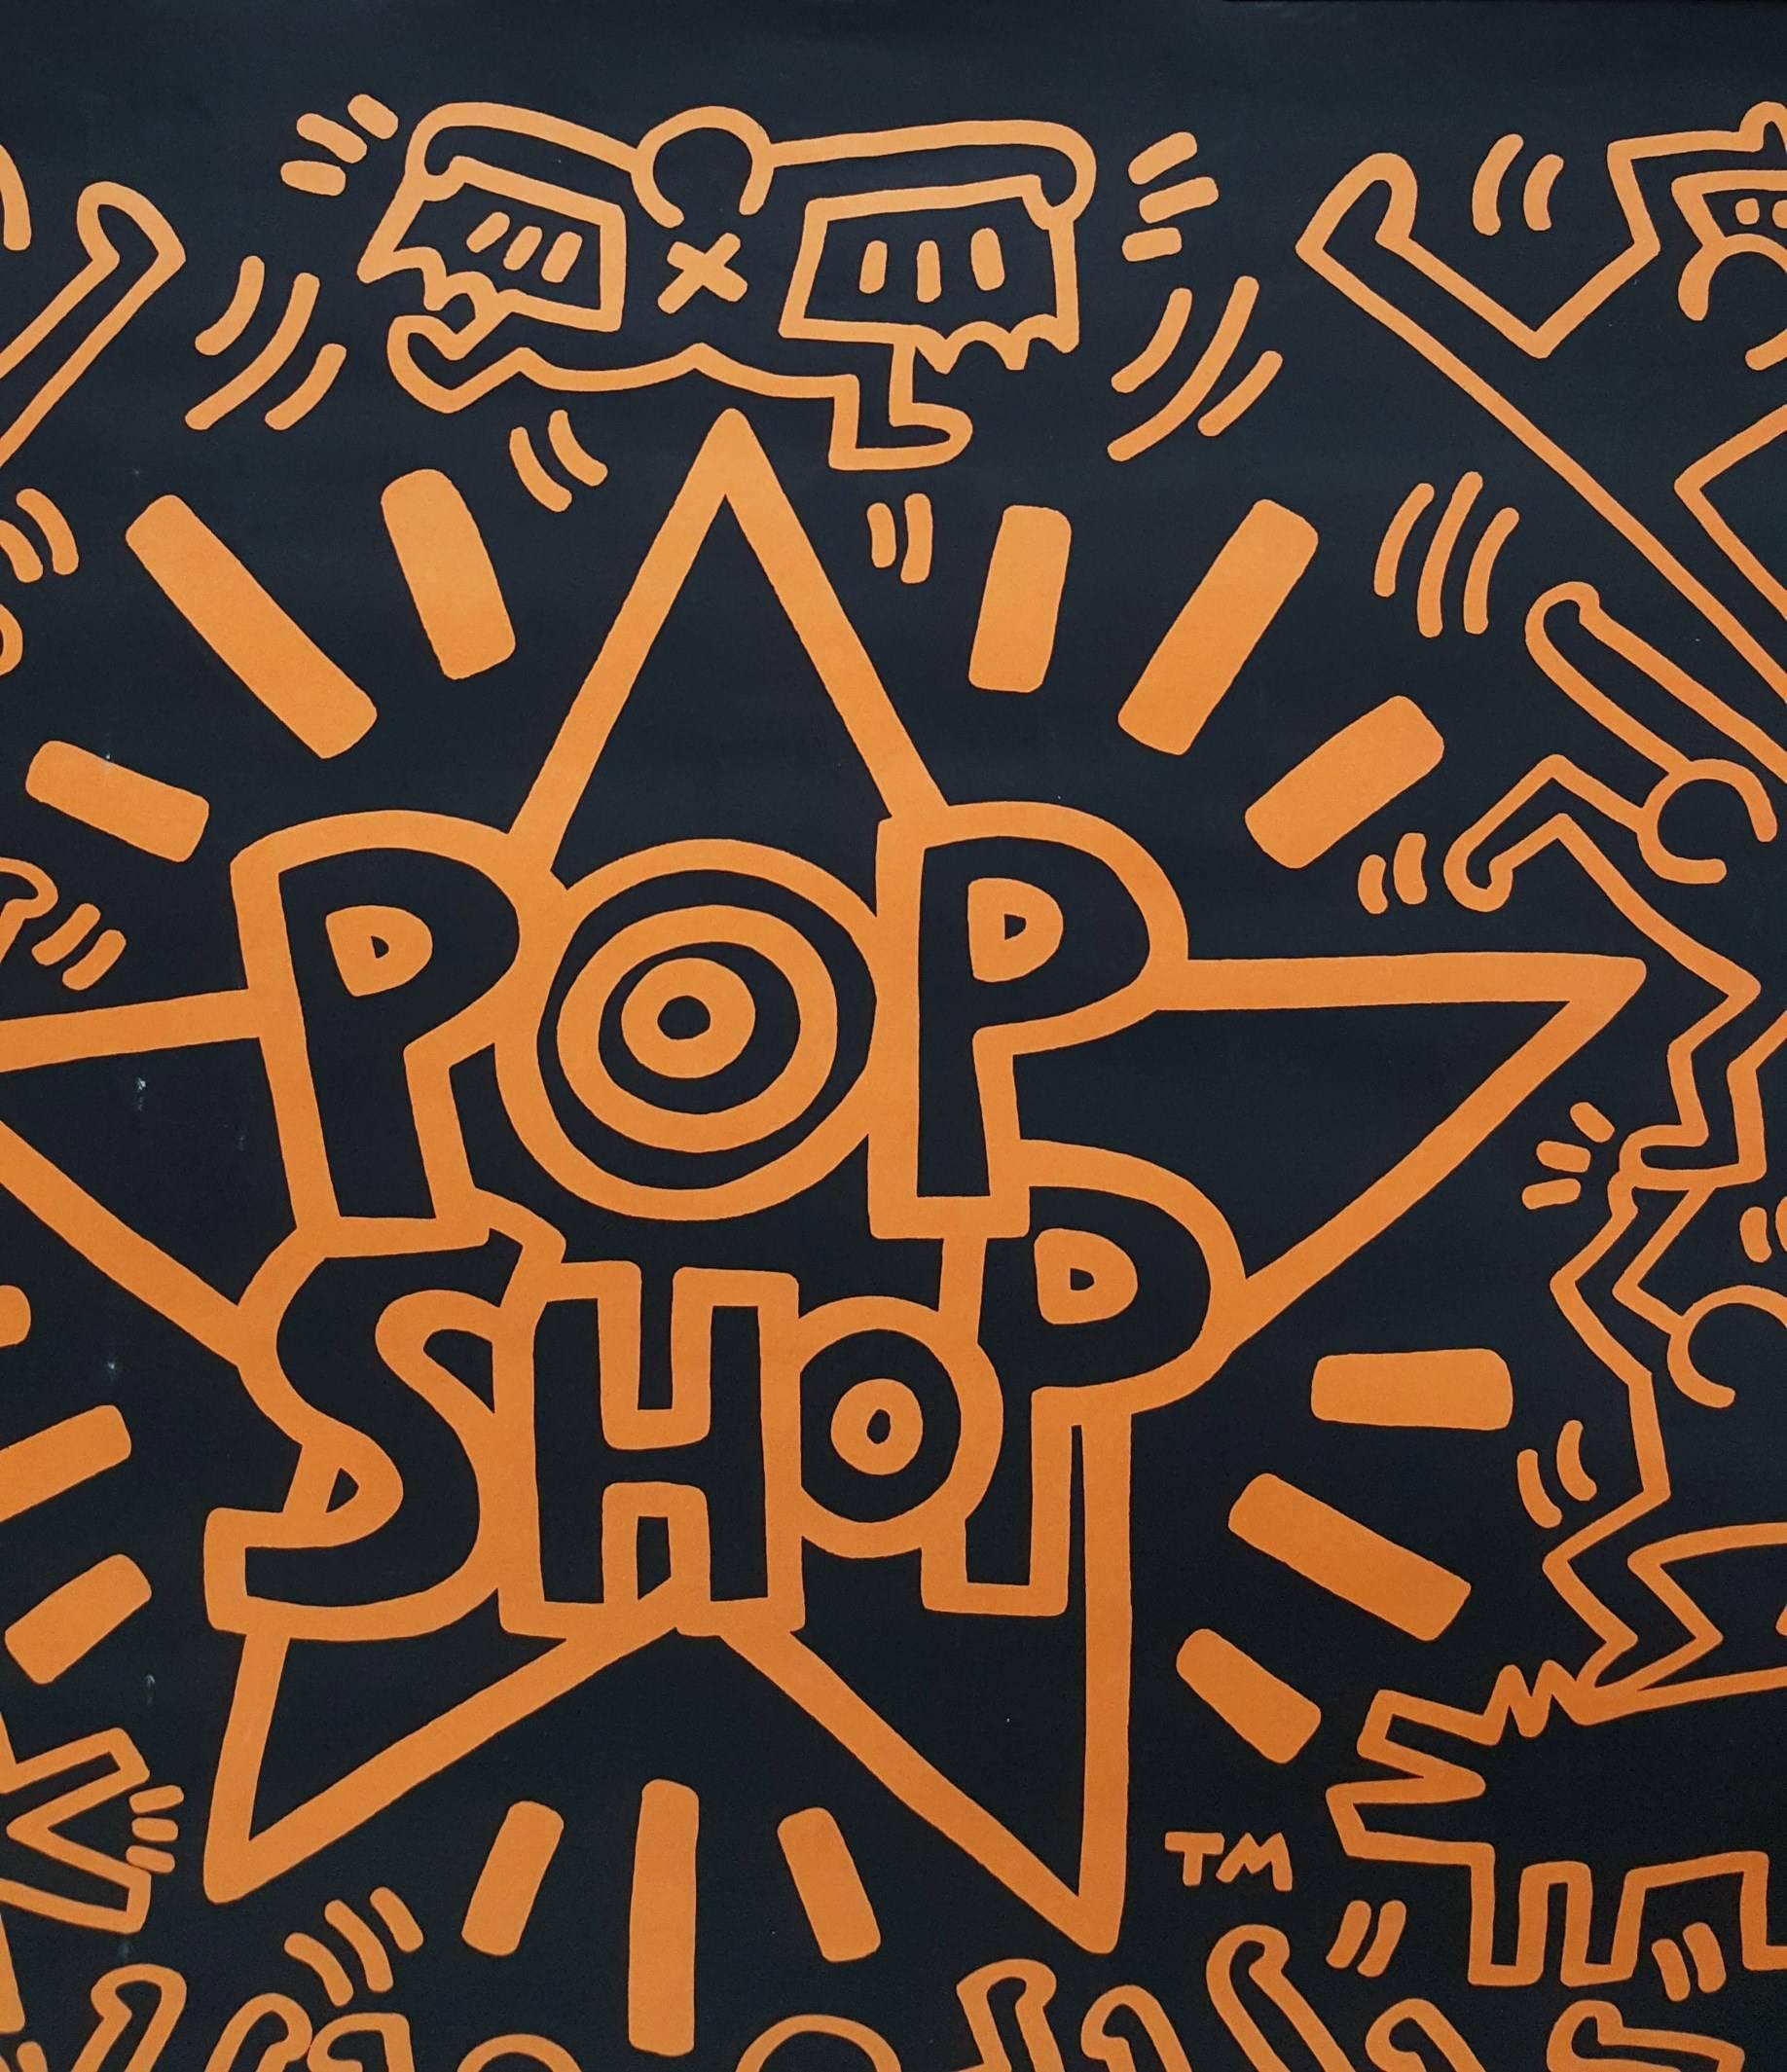 POP-Shop 1